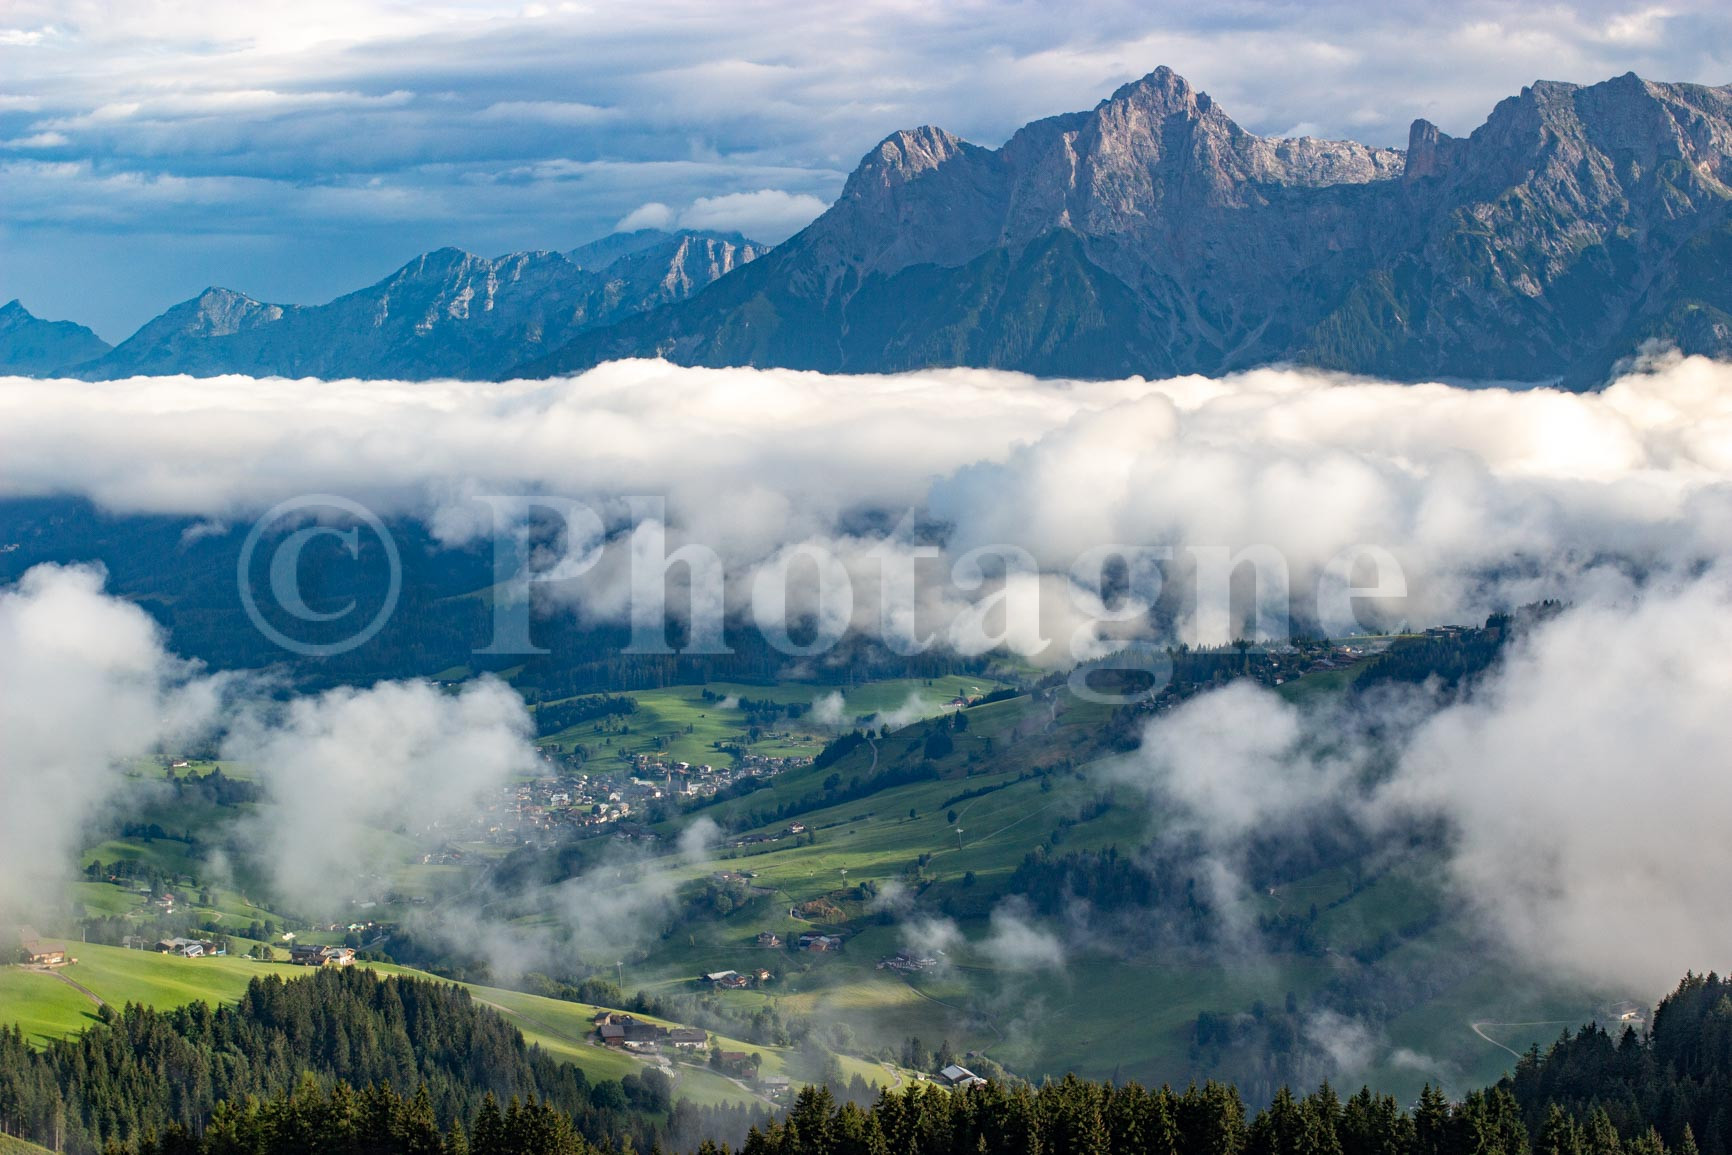 The Saalfelden Valley in Austria